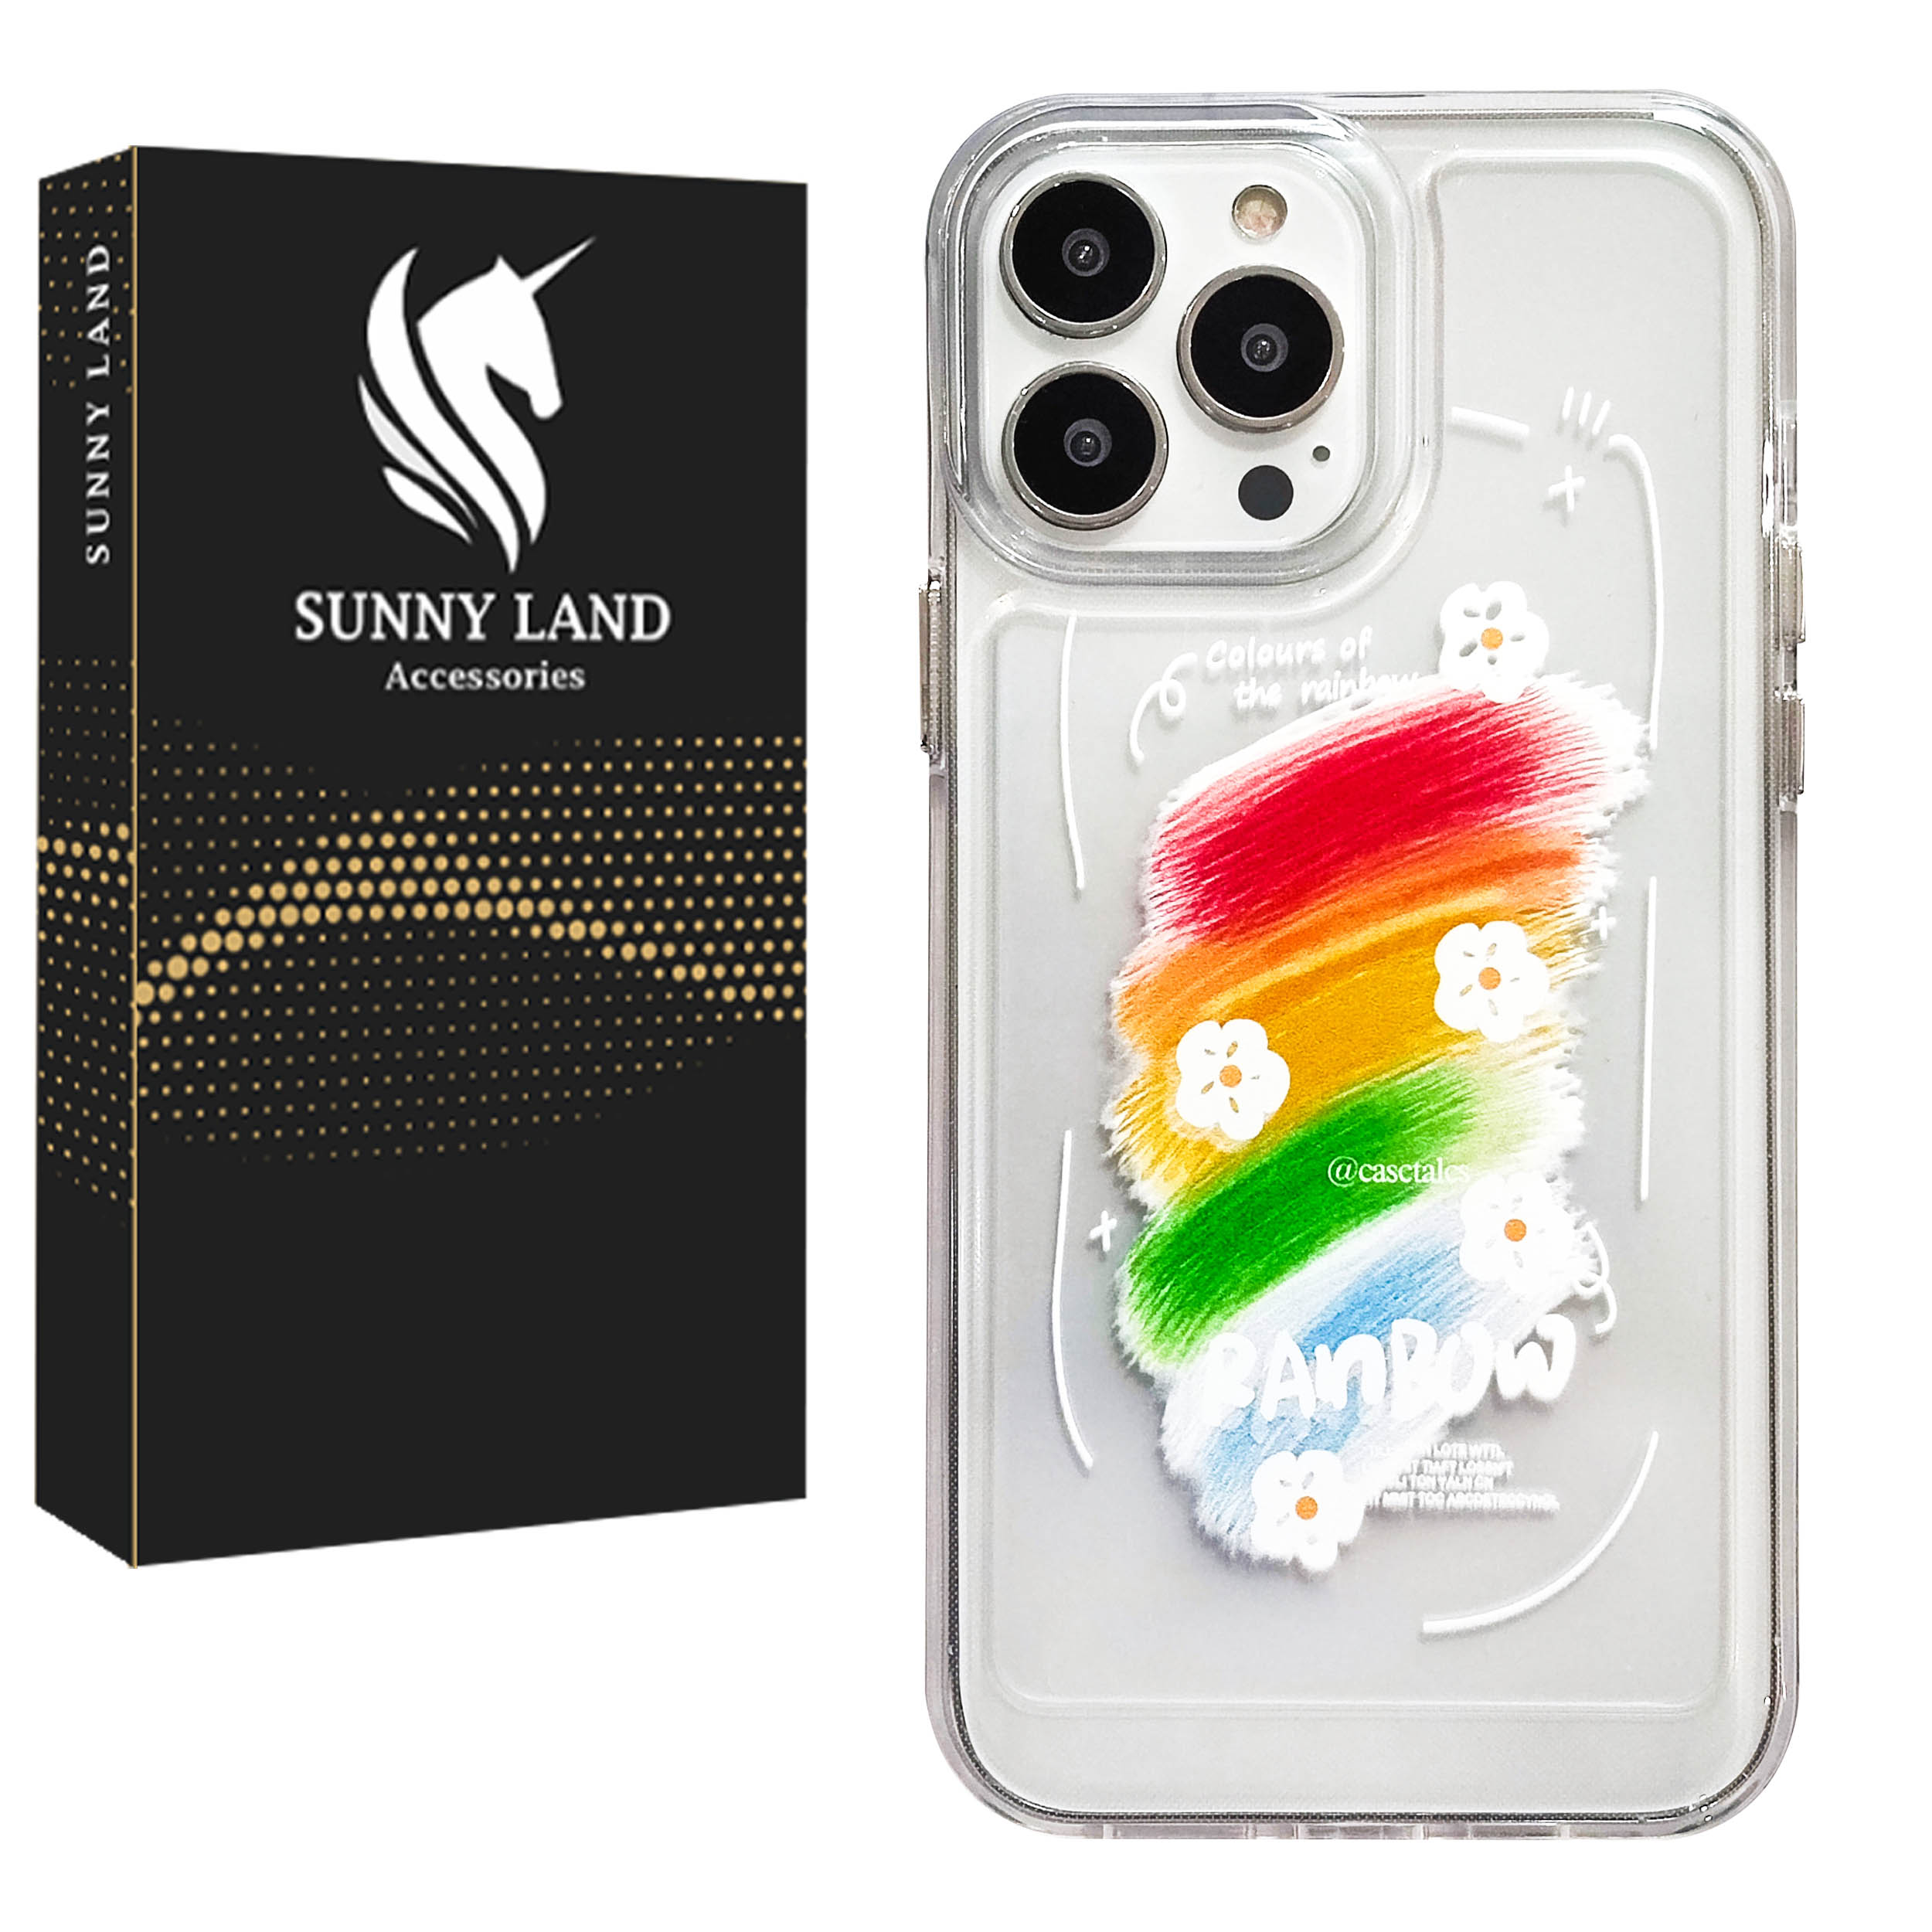 کاور سانی لند مدل Rainbow مناسب برای گوشی موبایل اپل iPhone 11 Pro Max